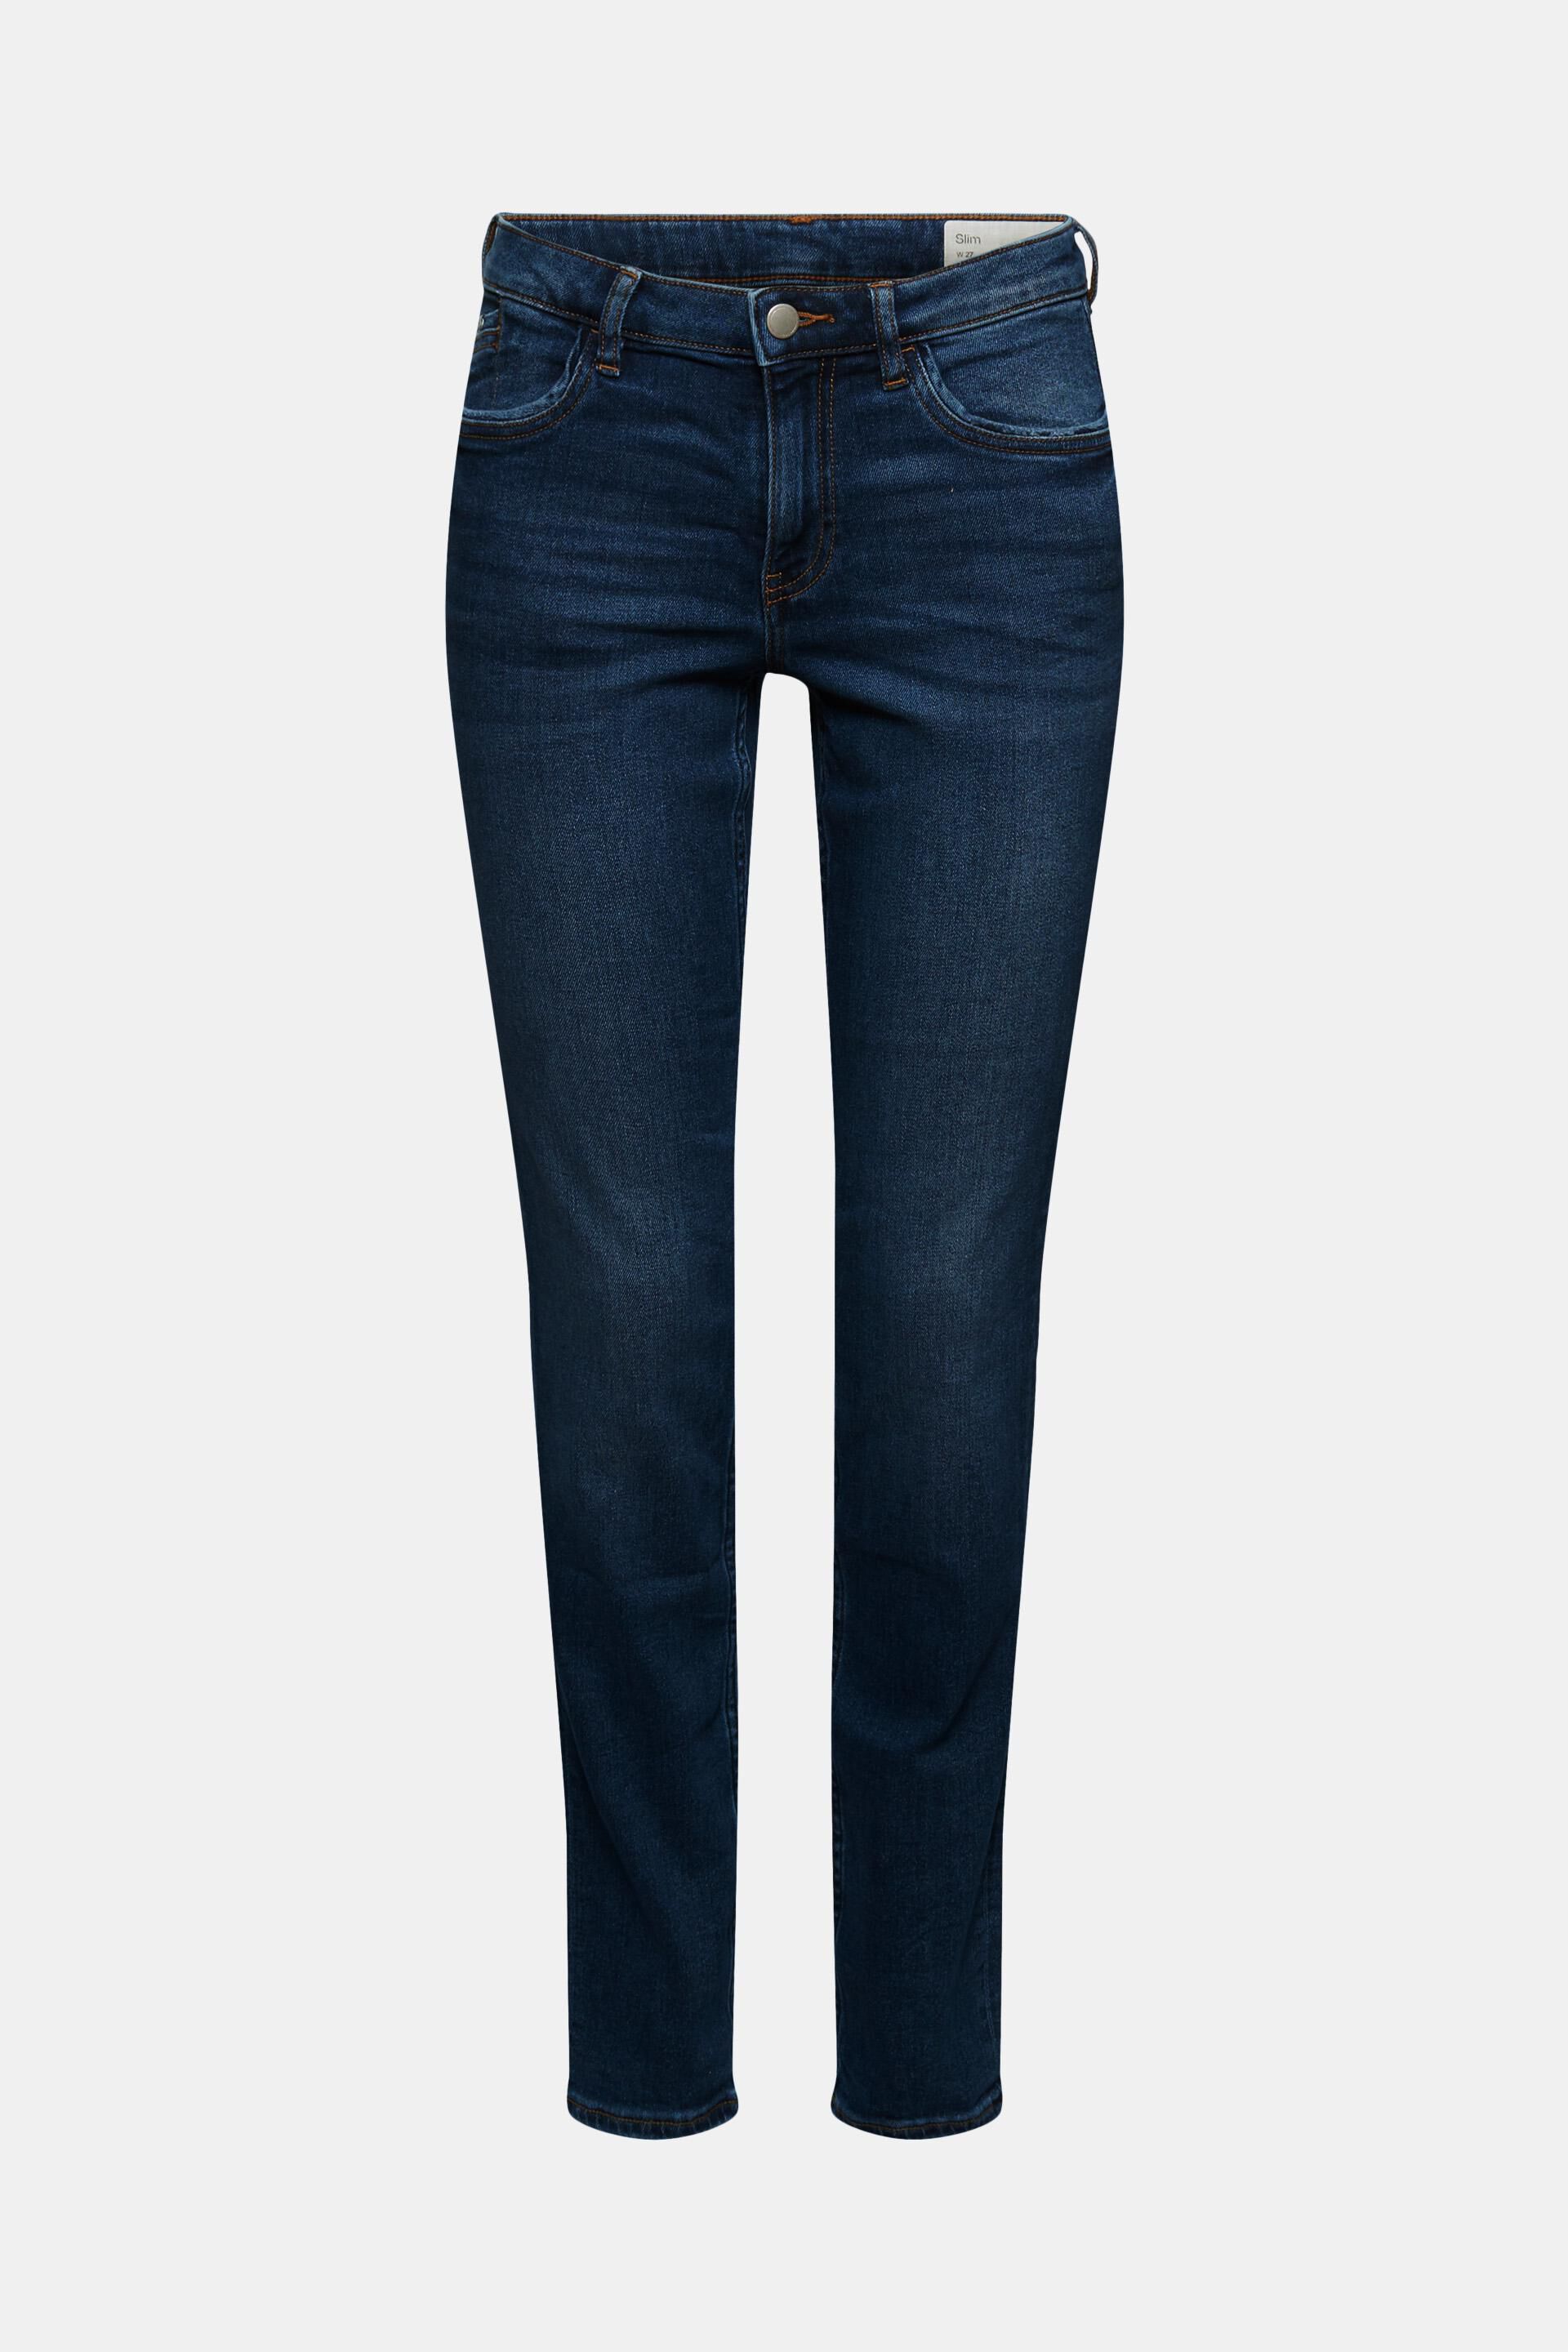 DAMEN Jeans Print Rabatt 57 % Dunkelblau 36 Pull&Bear Jegging & Skinny & Slim 